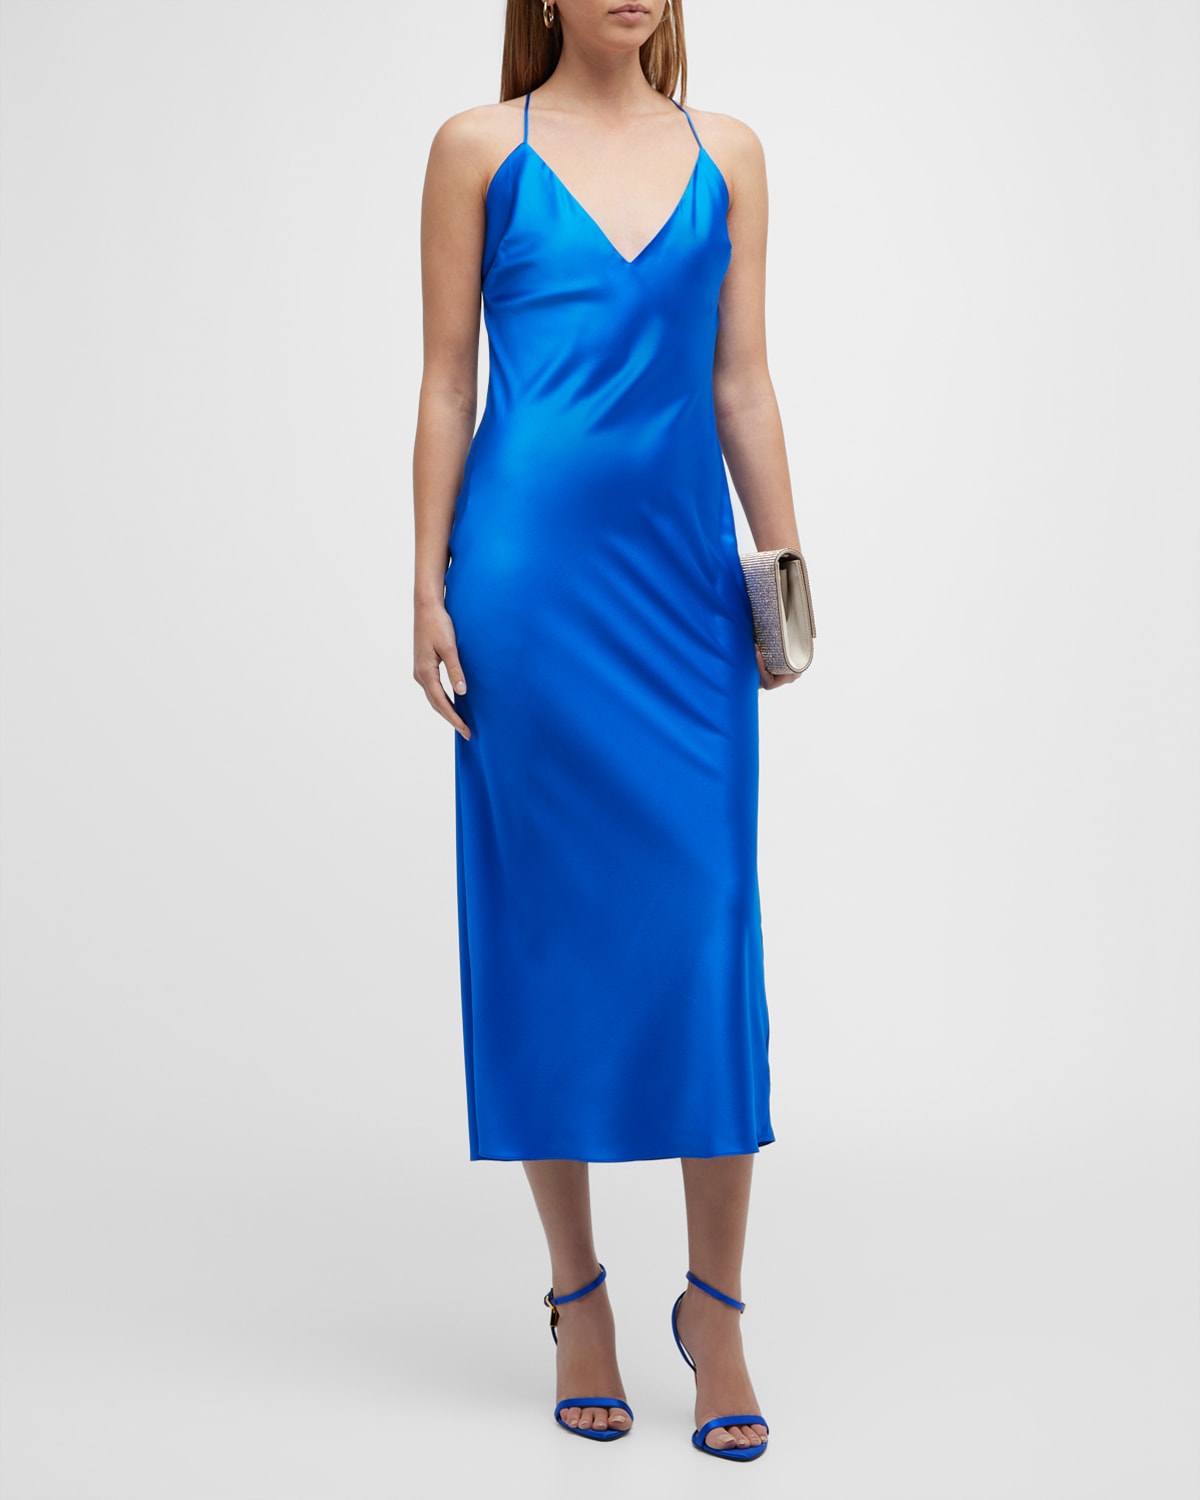 Ser.o.ya Rowan Silk Maxi Dress In Royal Blue | ModeSens